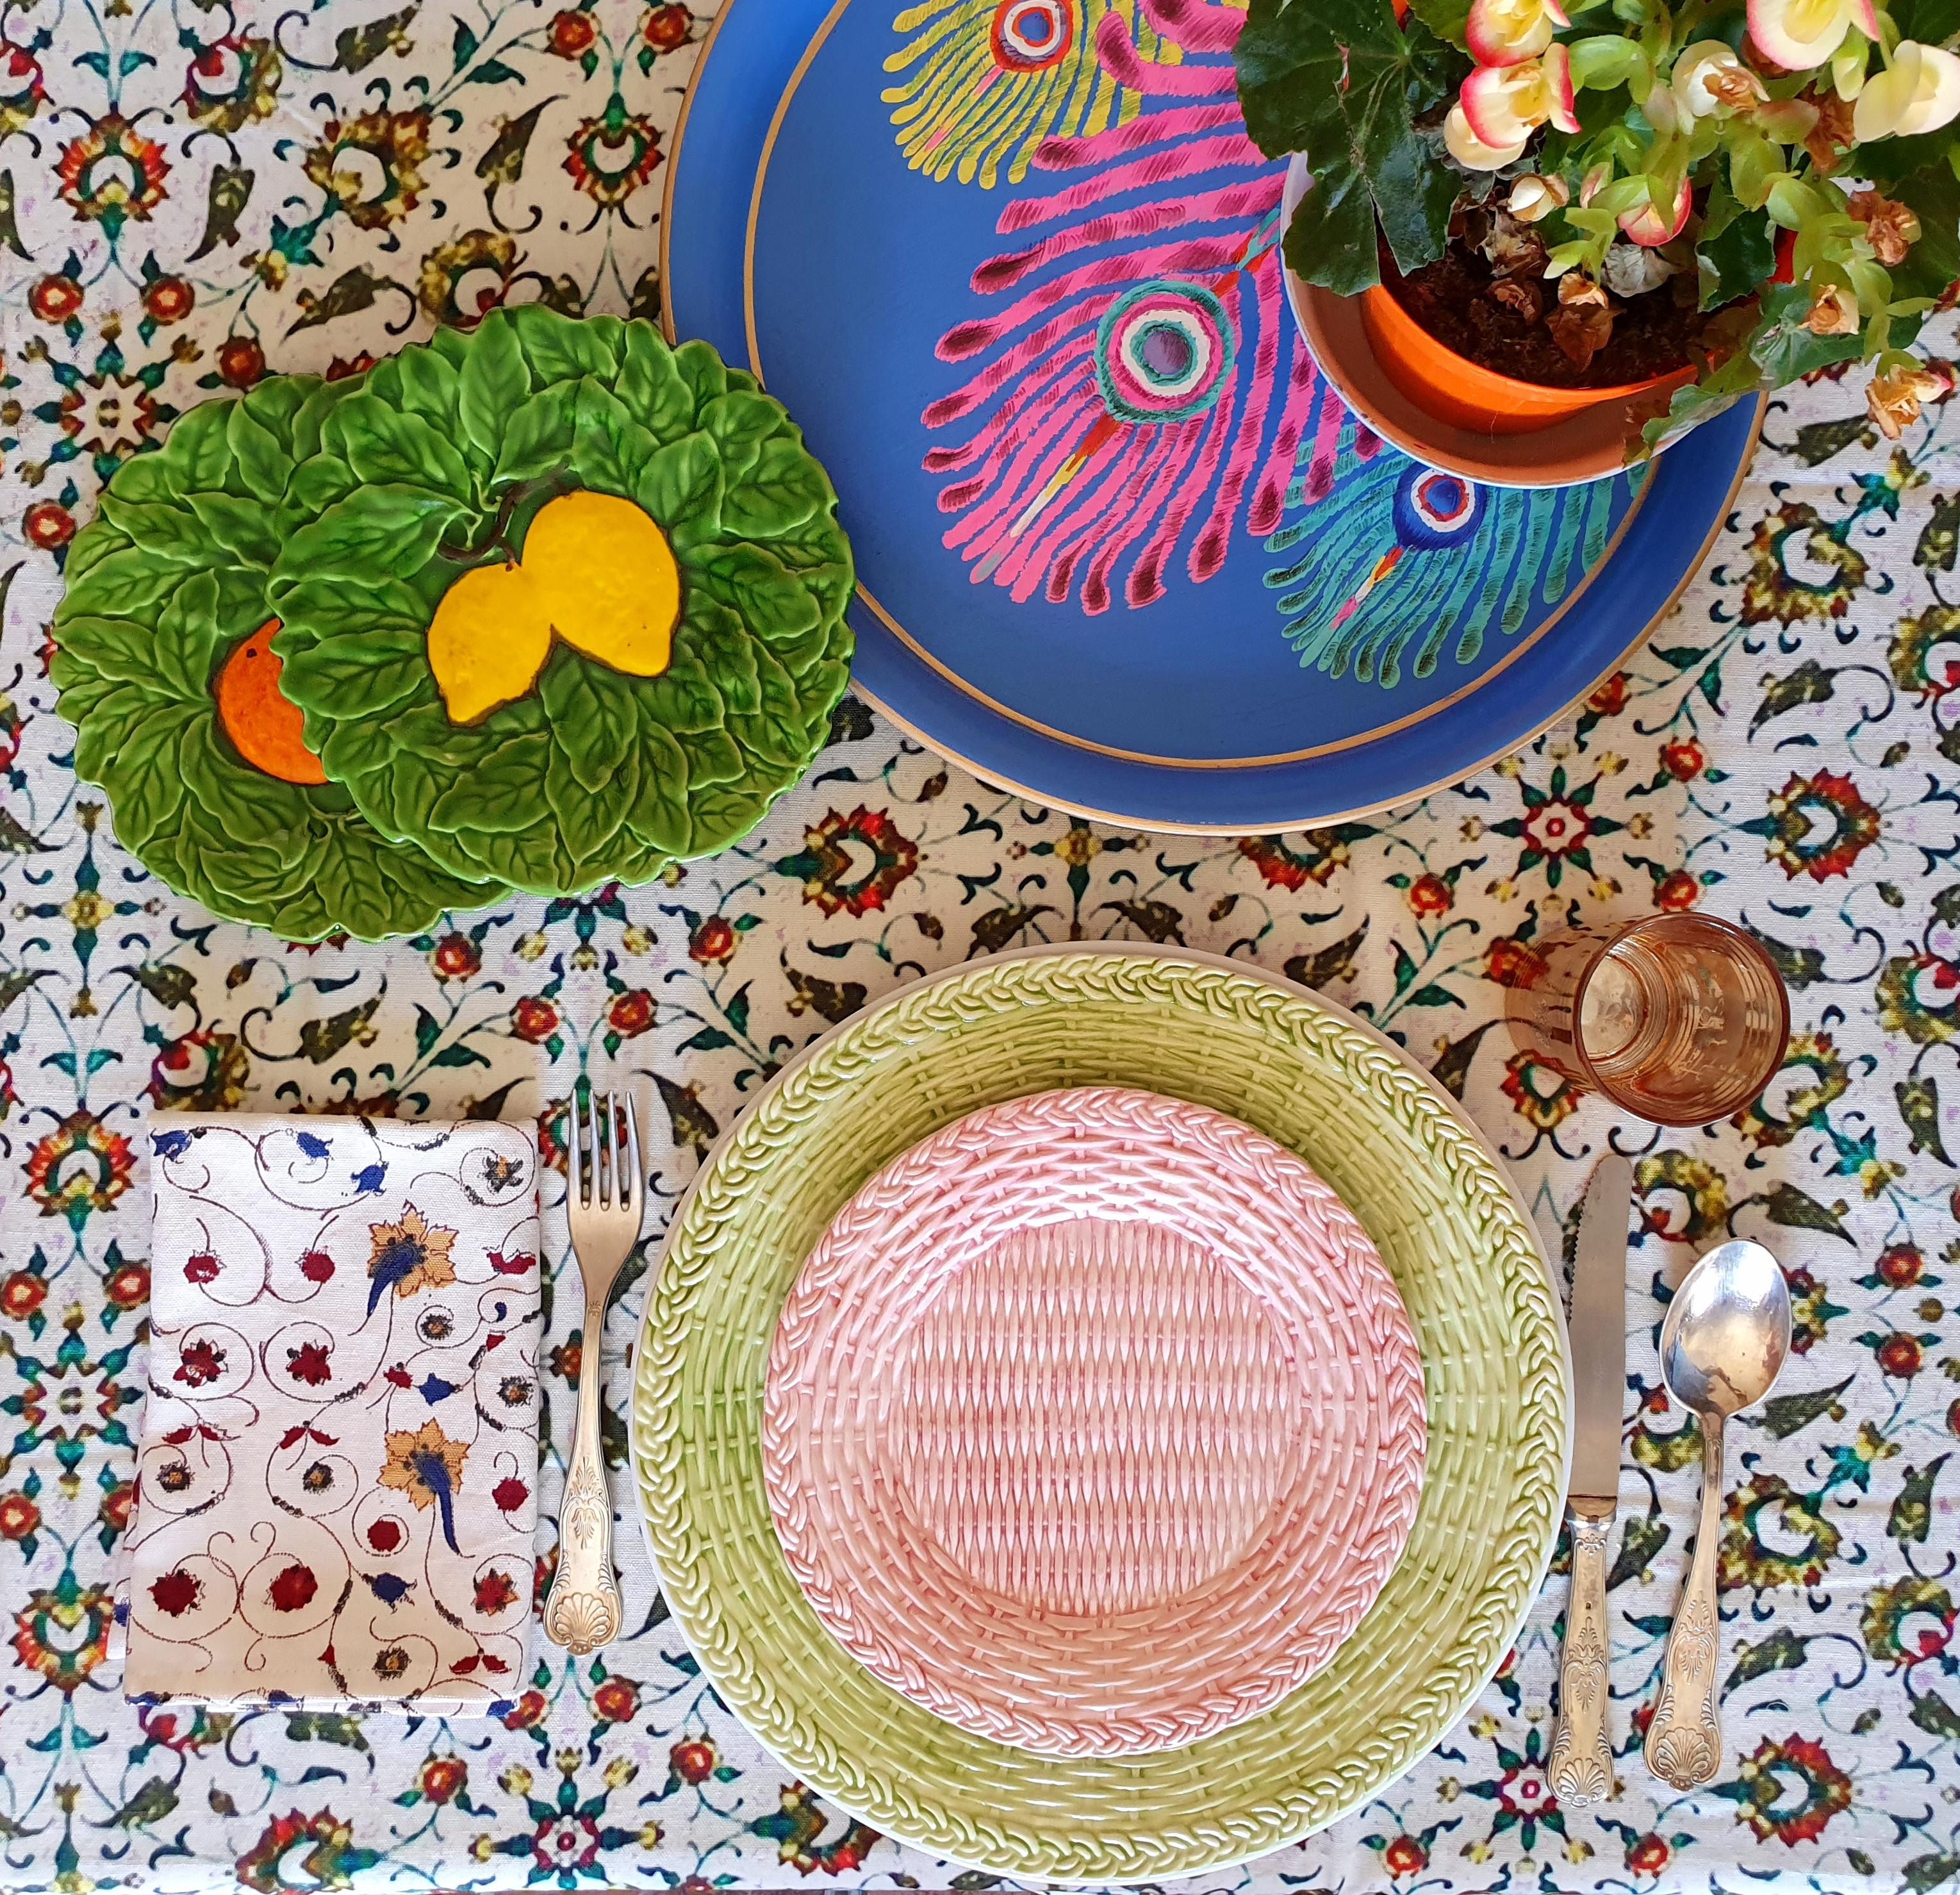 Assiettes en osier en céramique peintes à la main 
Couleur rose
Fabriqué en Italie 
Mesure : 21cm de diamètre.